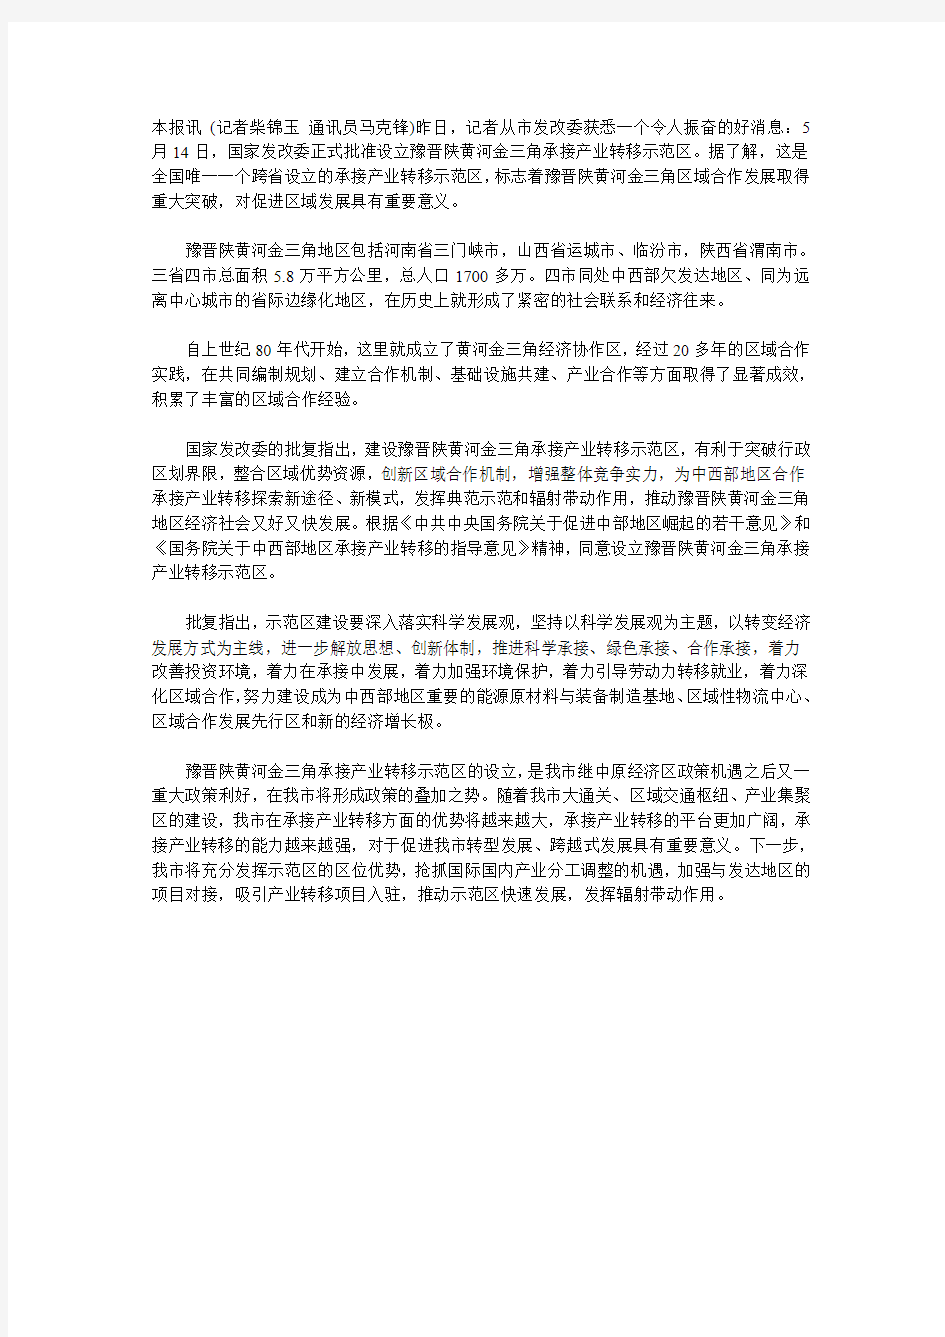 《关于设立晋陕豫黄河金三角承接产业转移示范区的批复》